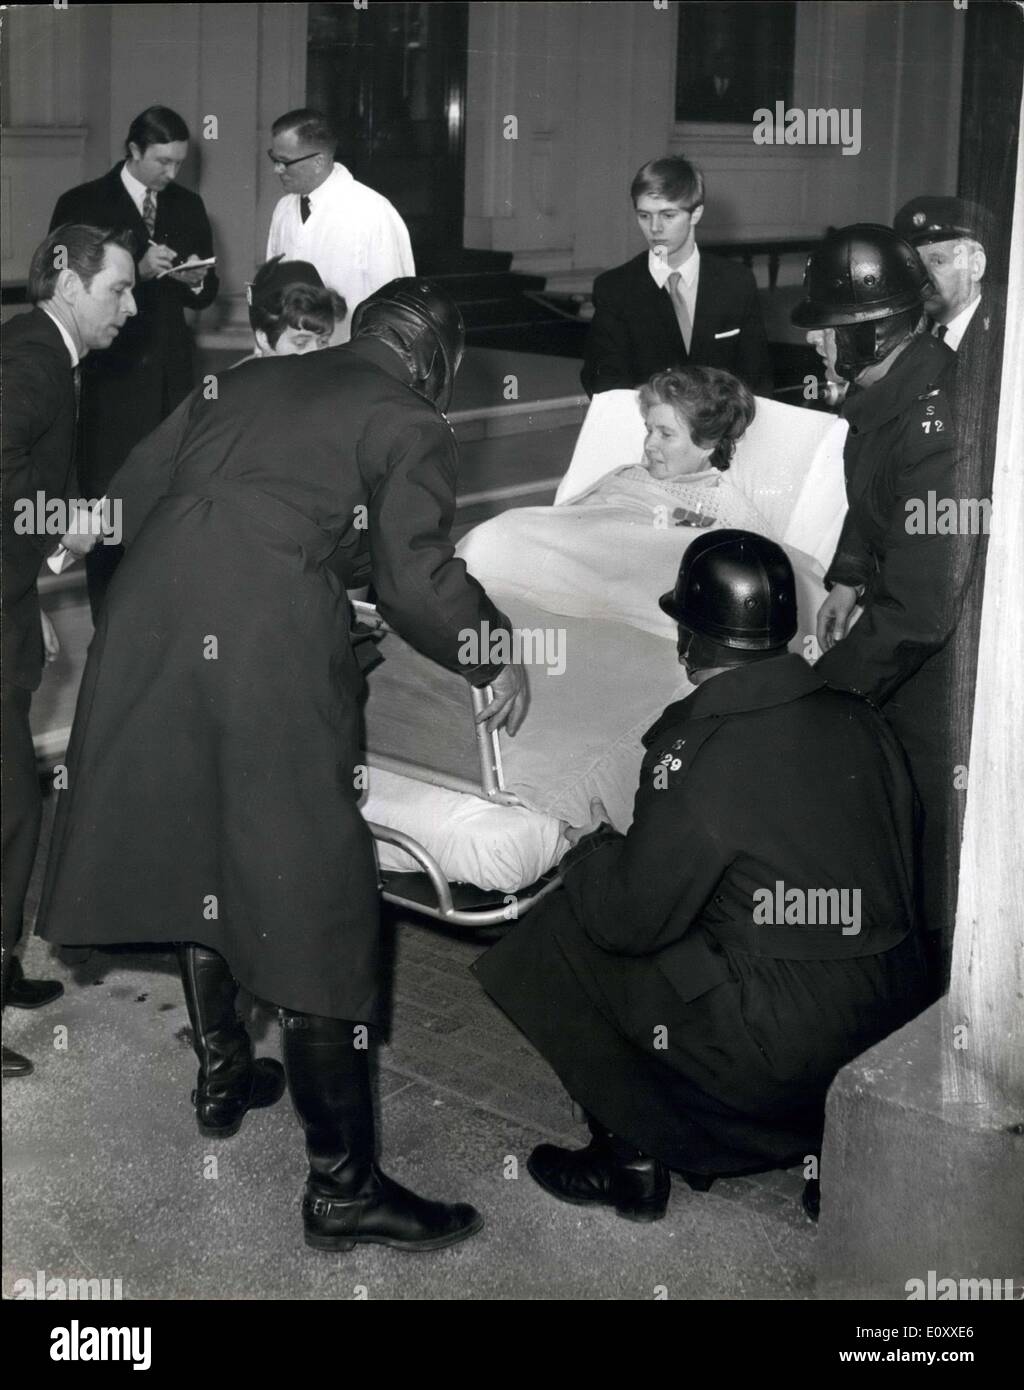 Mar. 12, 1968 - Mars 12, 1968 Mme Doris Page reçoit le MBE. Soulevez le motocycliste Police bed transportant Mme Doris, page 42, à partir de l'ambulance au sol dans le quadrilatère du Buckingham Palace aujourd'hui. Mme page qui est une victime de la polio et utilise un poumon de fer, était dans l'avant à roues Prix du palais pour recevoir le MBE de la reine Elizabeth II pour son travail en tant que rédacteur de la revue Responaut pour personnes vivant par un appareil respiratoire. Le mari de Mme Page, Kenneth est représenté au pied du lit (à gauche) et l'un de ses deux fils est représenté à la tête du lit. Banque D'Images